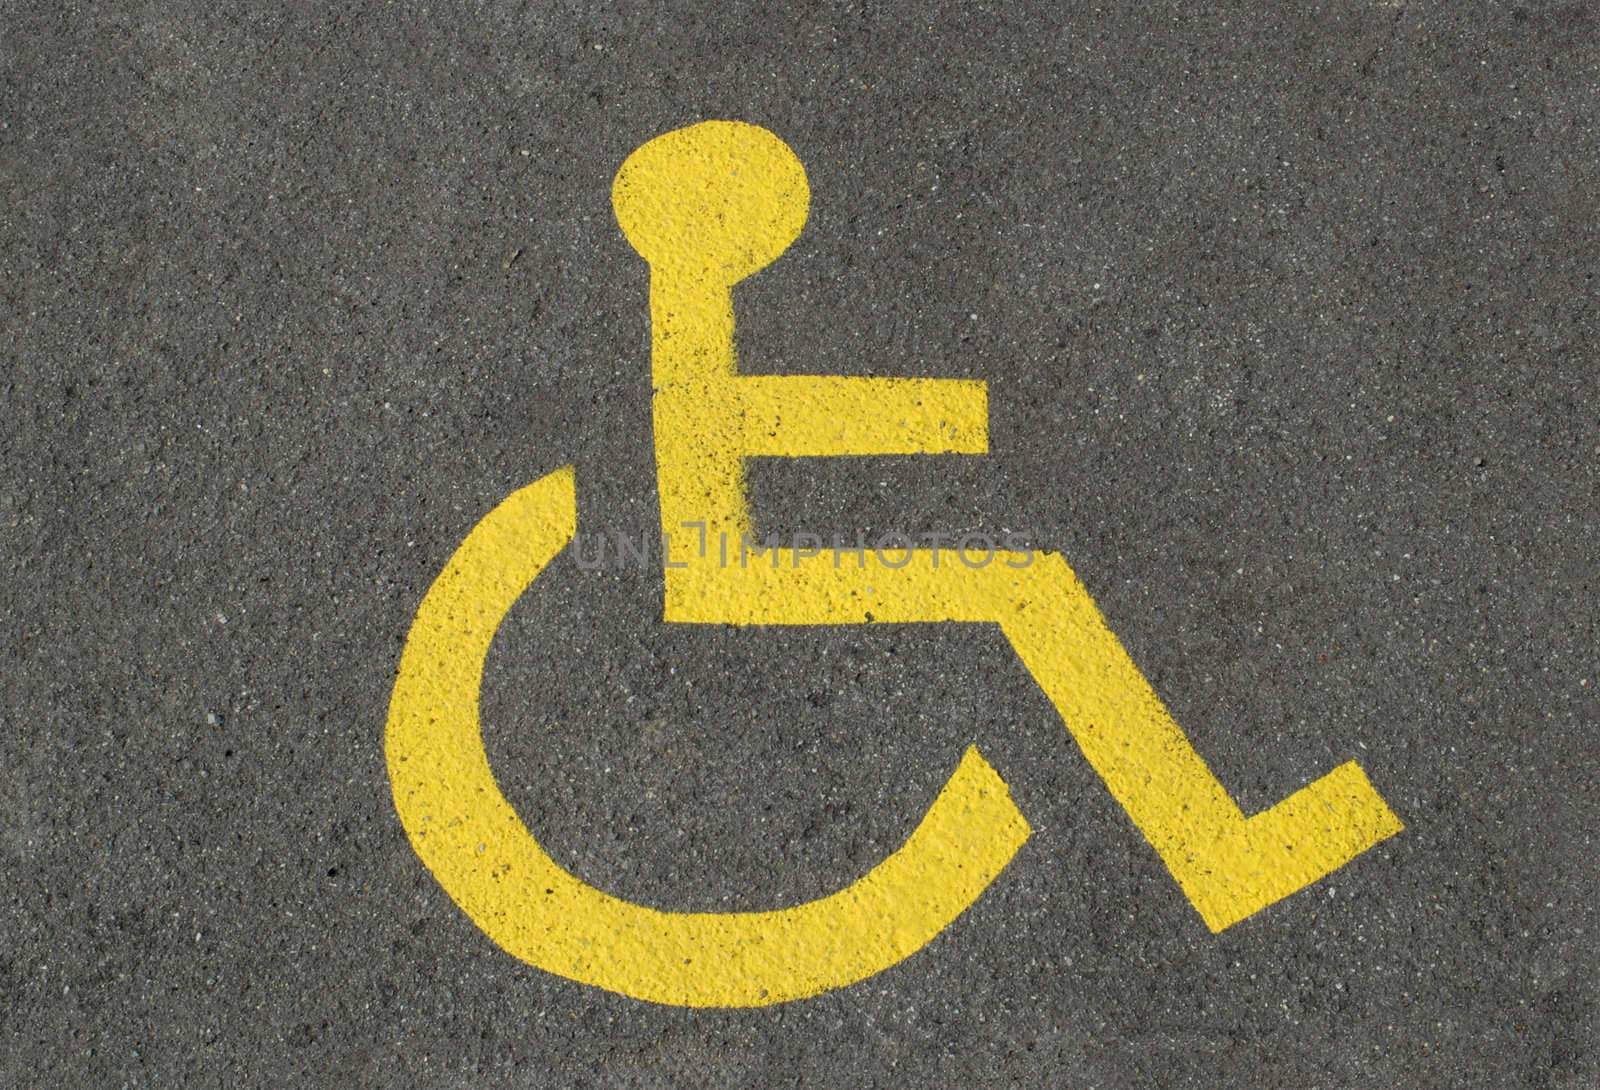 A sign for disabled parking, on asphalt.